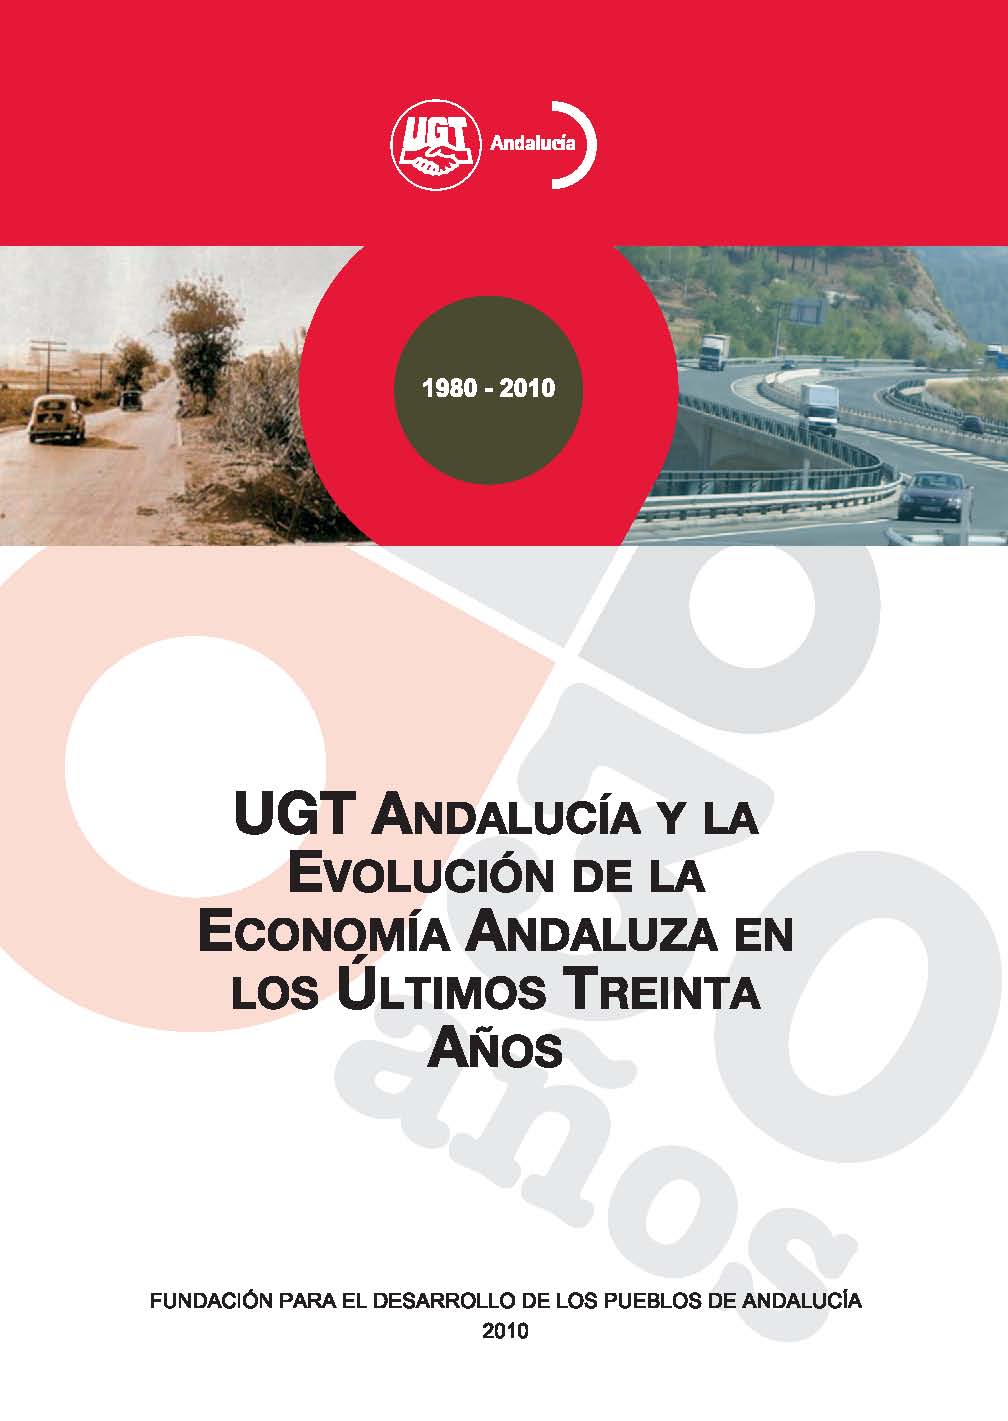 UGT Andalucía y la Evolución de la Economía Andaluza en los últimos 30 años